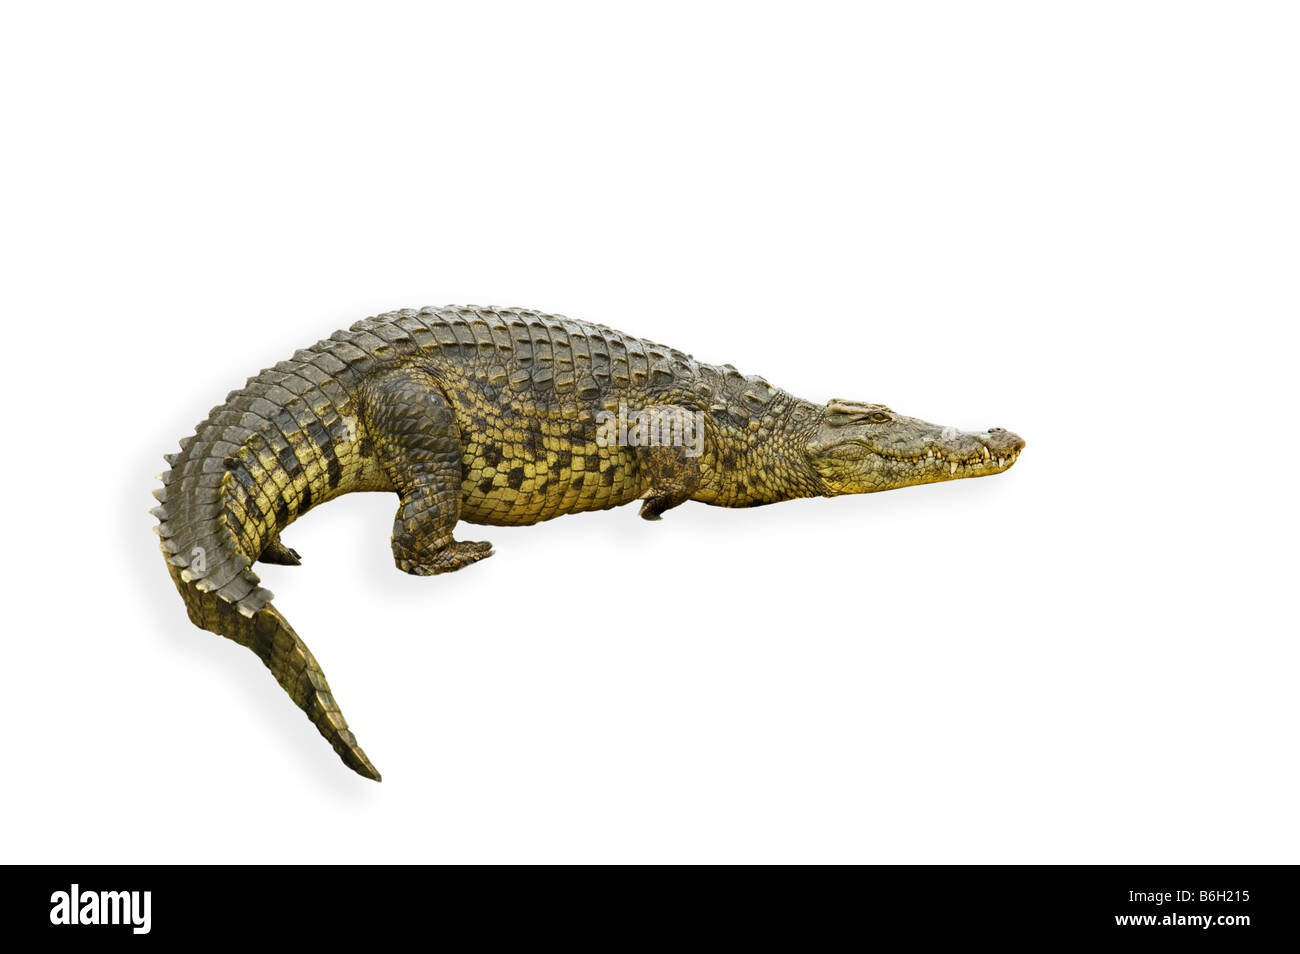 Spaccato di fauna selvatica coccodrillo del Nilo Crocodylus niloticus sud-Afrika sud africa Big fat heavy simbolico simbolo backgr bianco Foto Stock